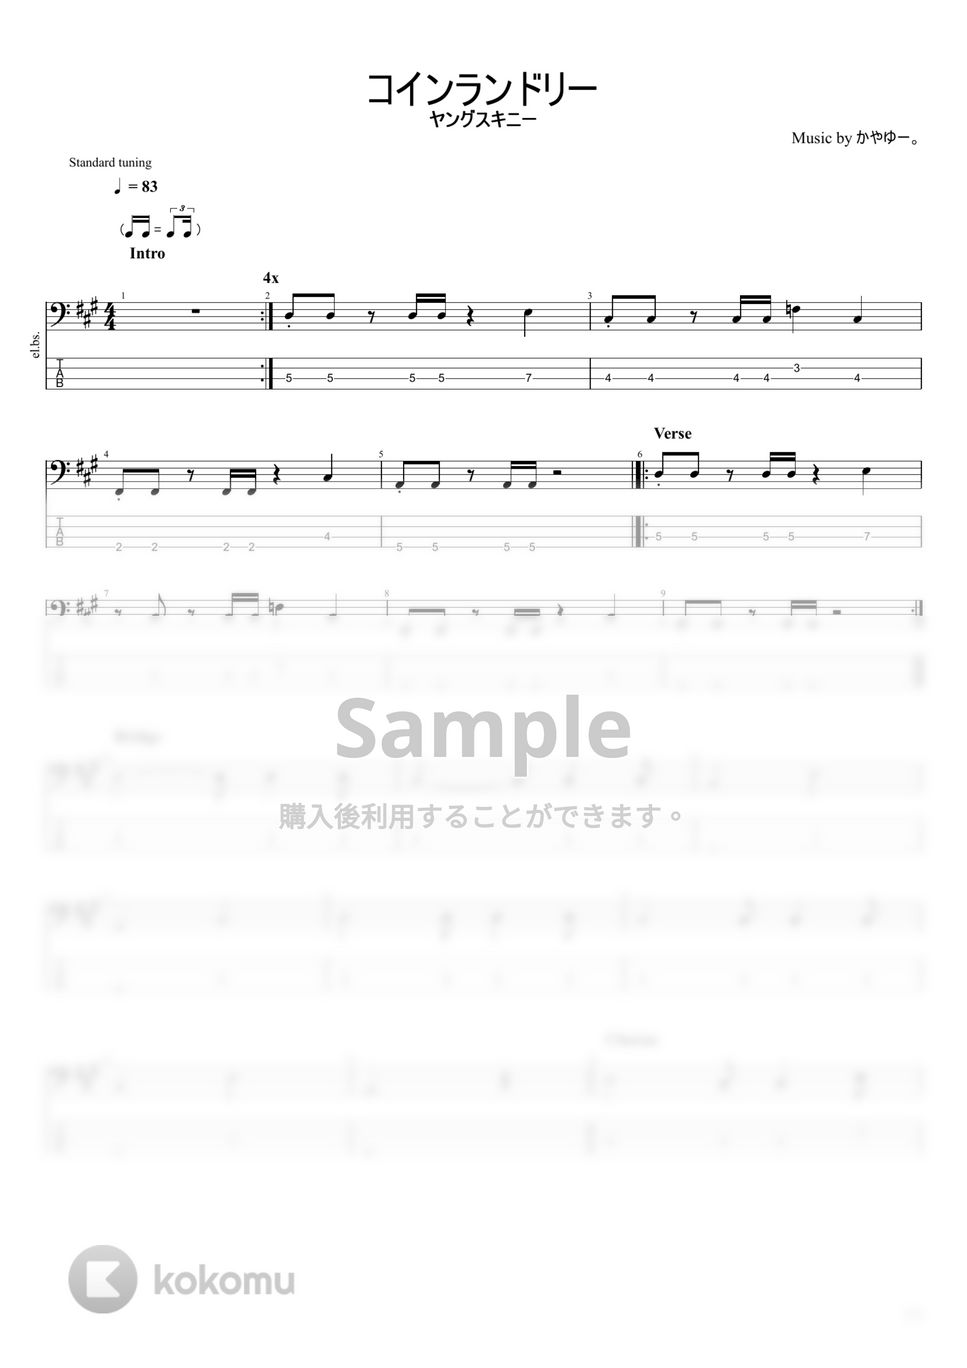 ヤングスキニー - コインランドリー 楽譜 by まっきん